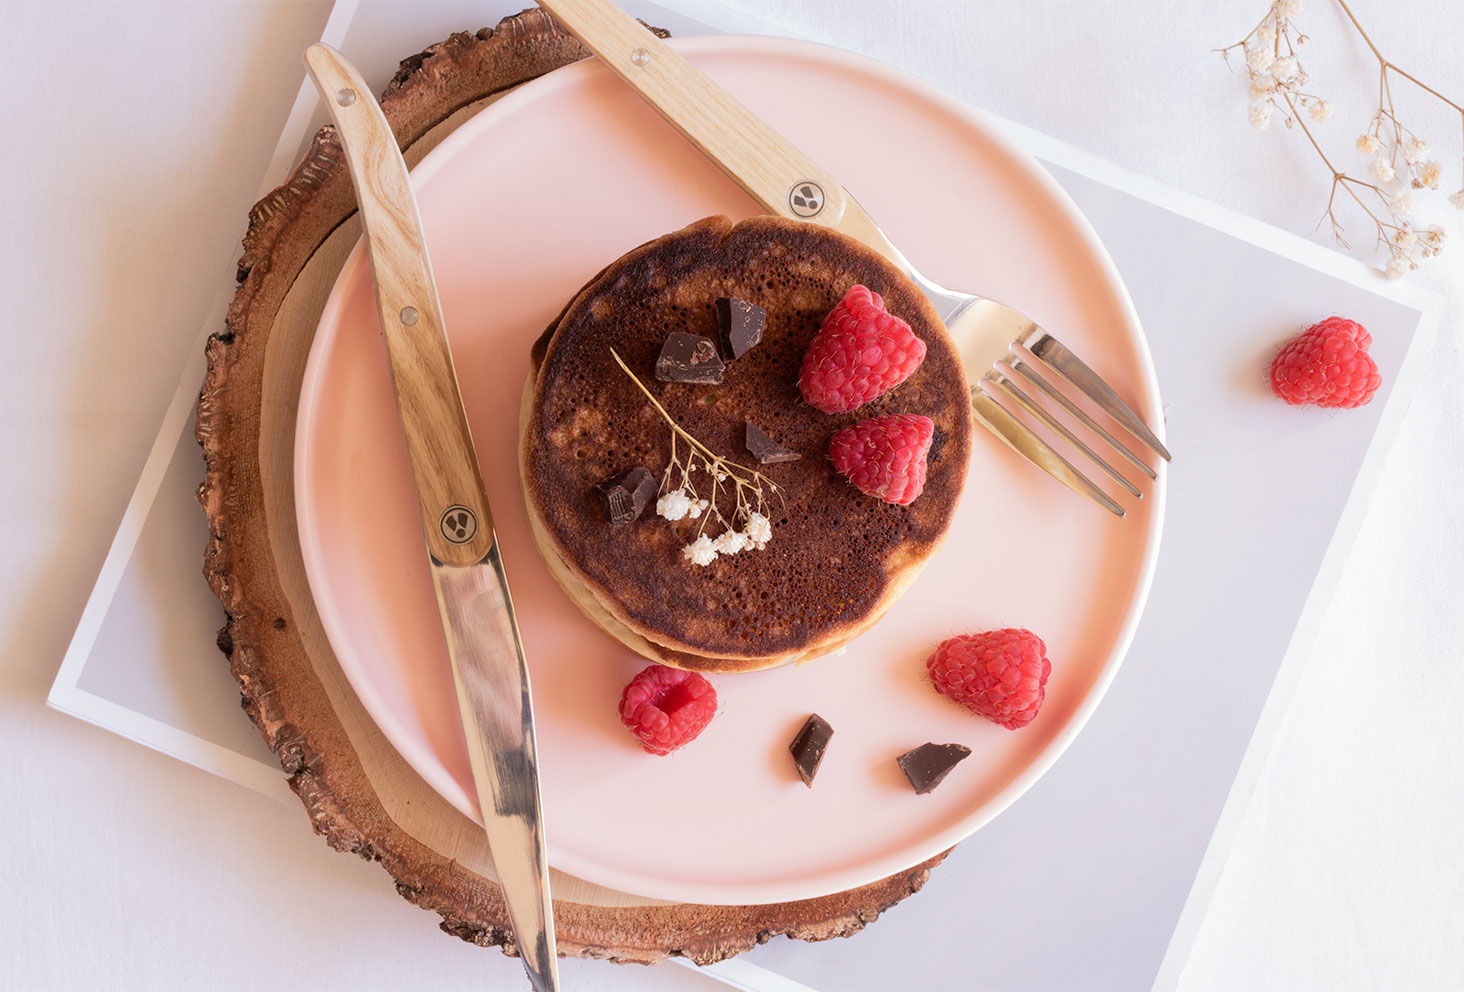 Une recette facile de fluffy pancakes, posés dans une assiette rose avec un couteau et une fourchette en bois, au milieu de framboises et d'éclats de chocolat